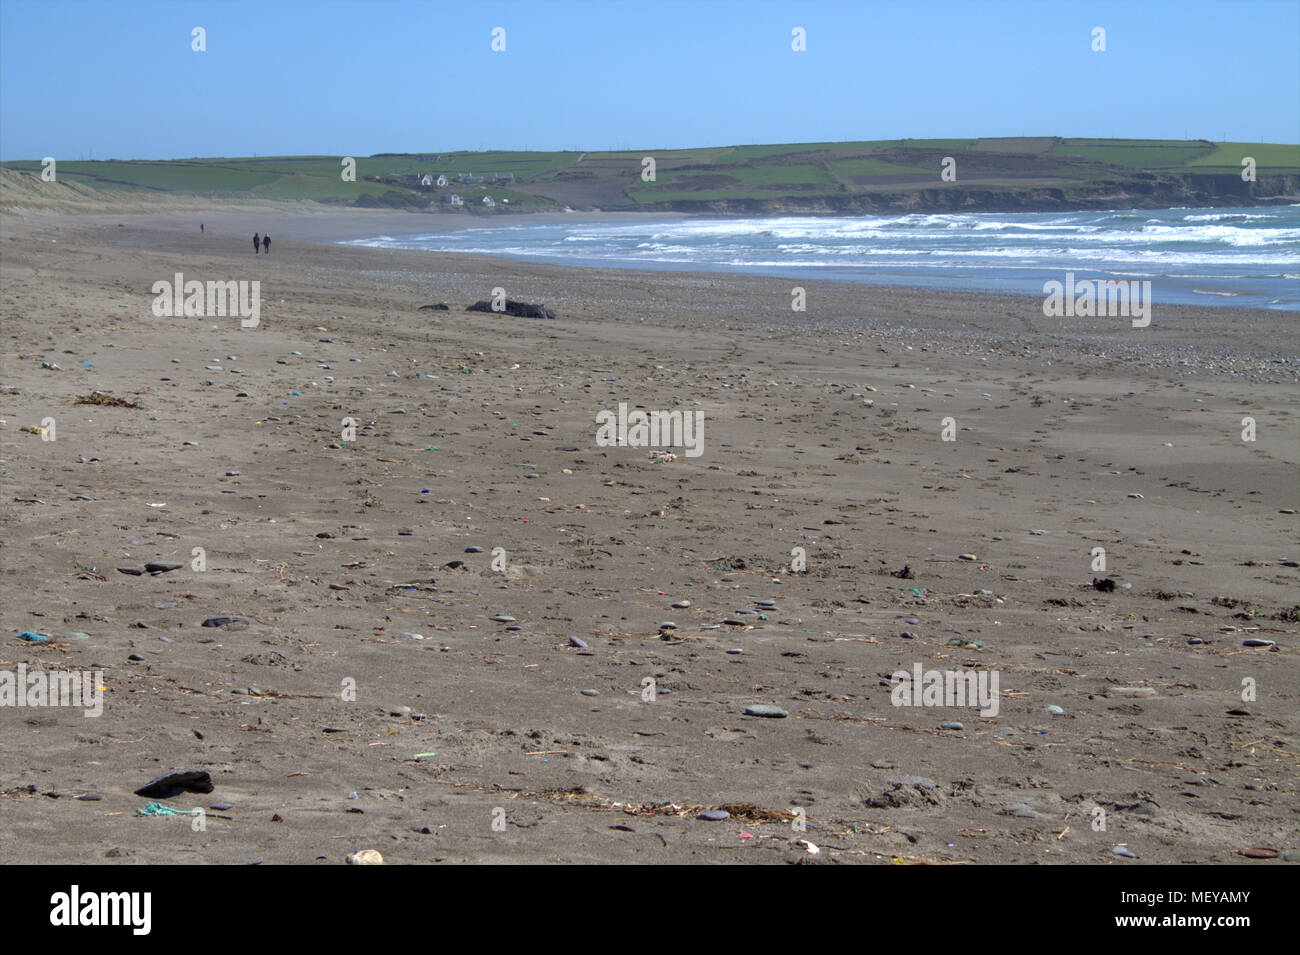 Giovane camminando su un vuoto di spiaggia di sabbia in una luminosa giornata d'estate con la rottura delle onde in rotolamento su una brezza di mare. Spiaggia Owenahincha Irlanda. Foto Stock